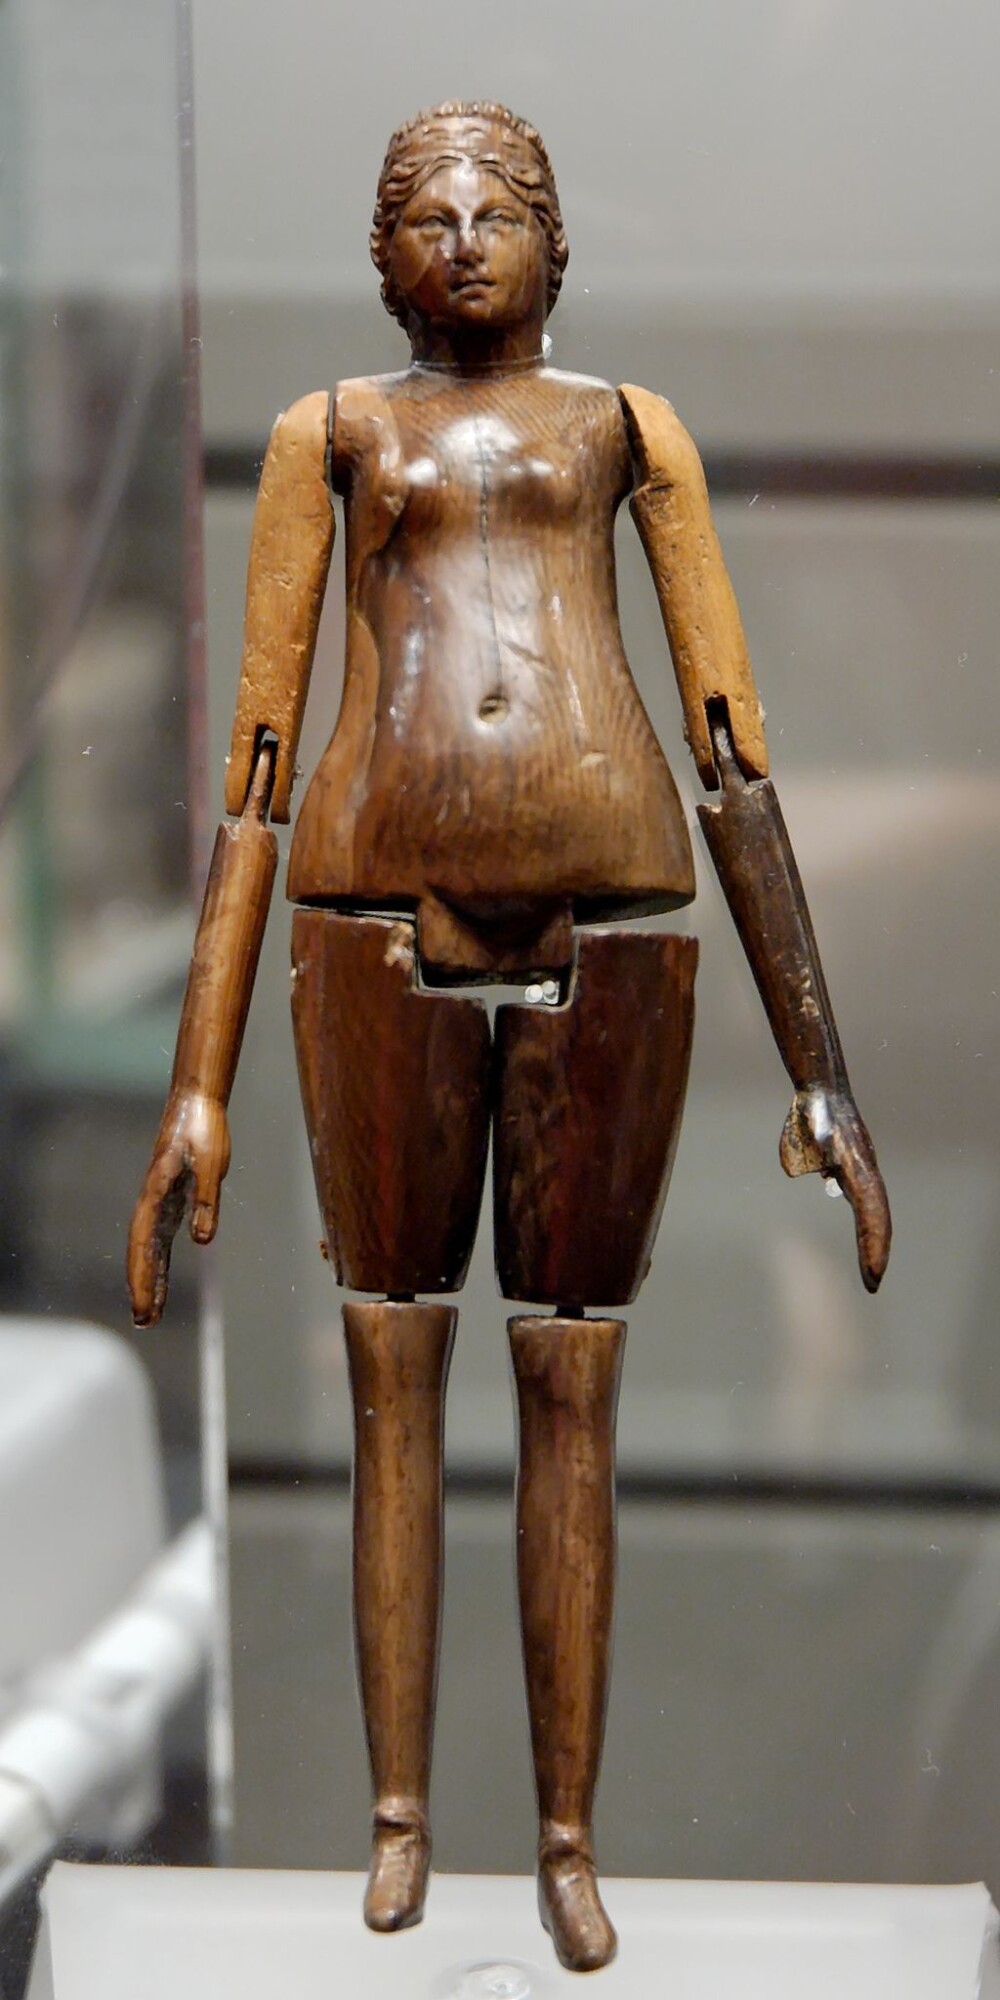 Muñeca de la antigua Roma en marfil con articulaciones, encontrada en el sarcófago de una niña, siglo II. (imagen vía Wikimedia)